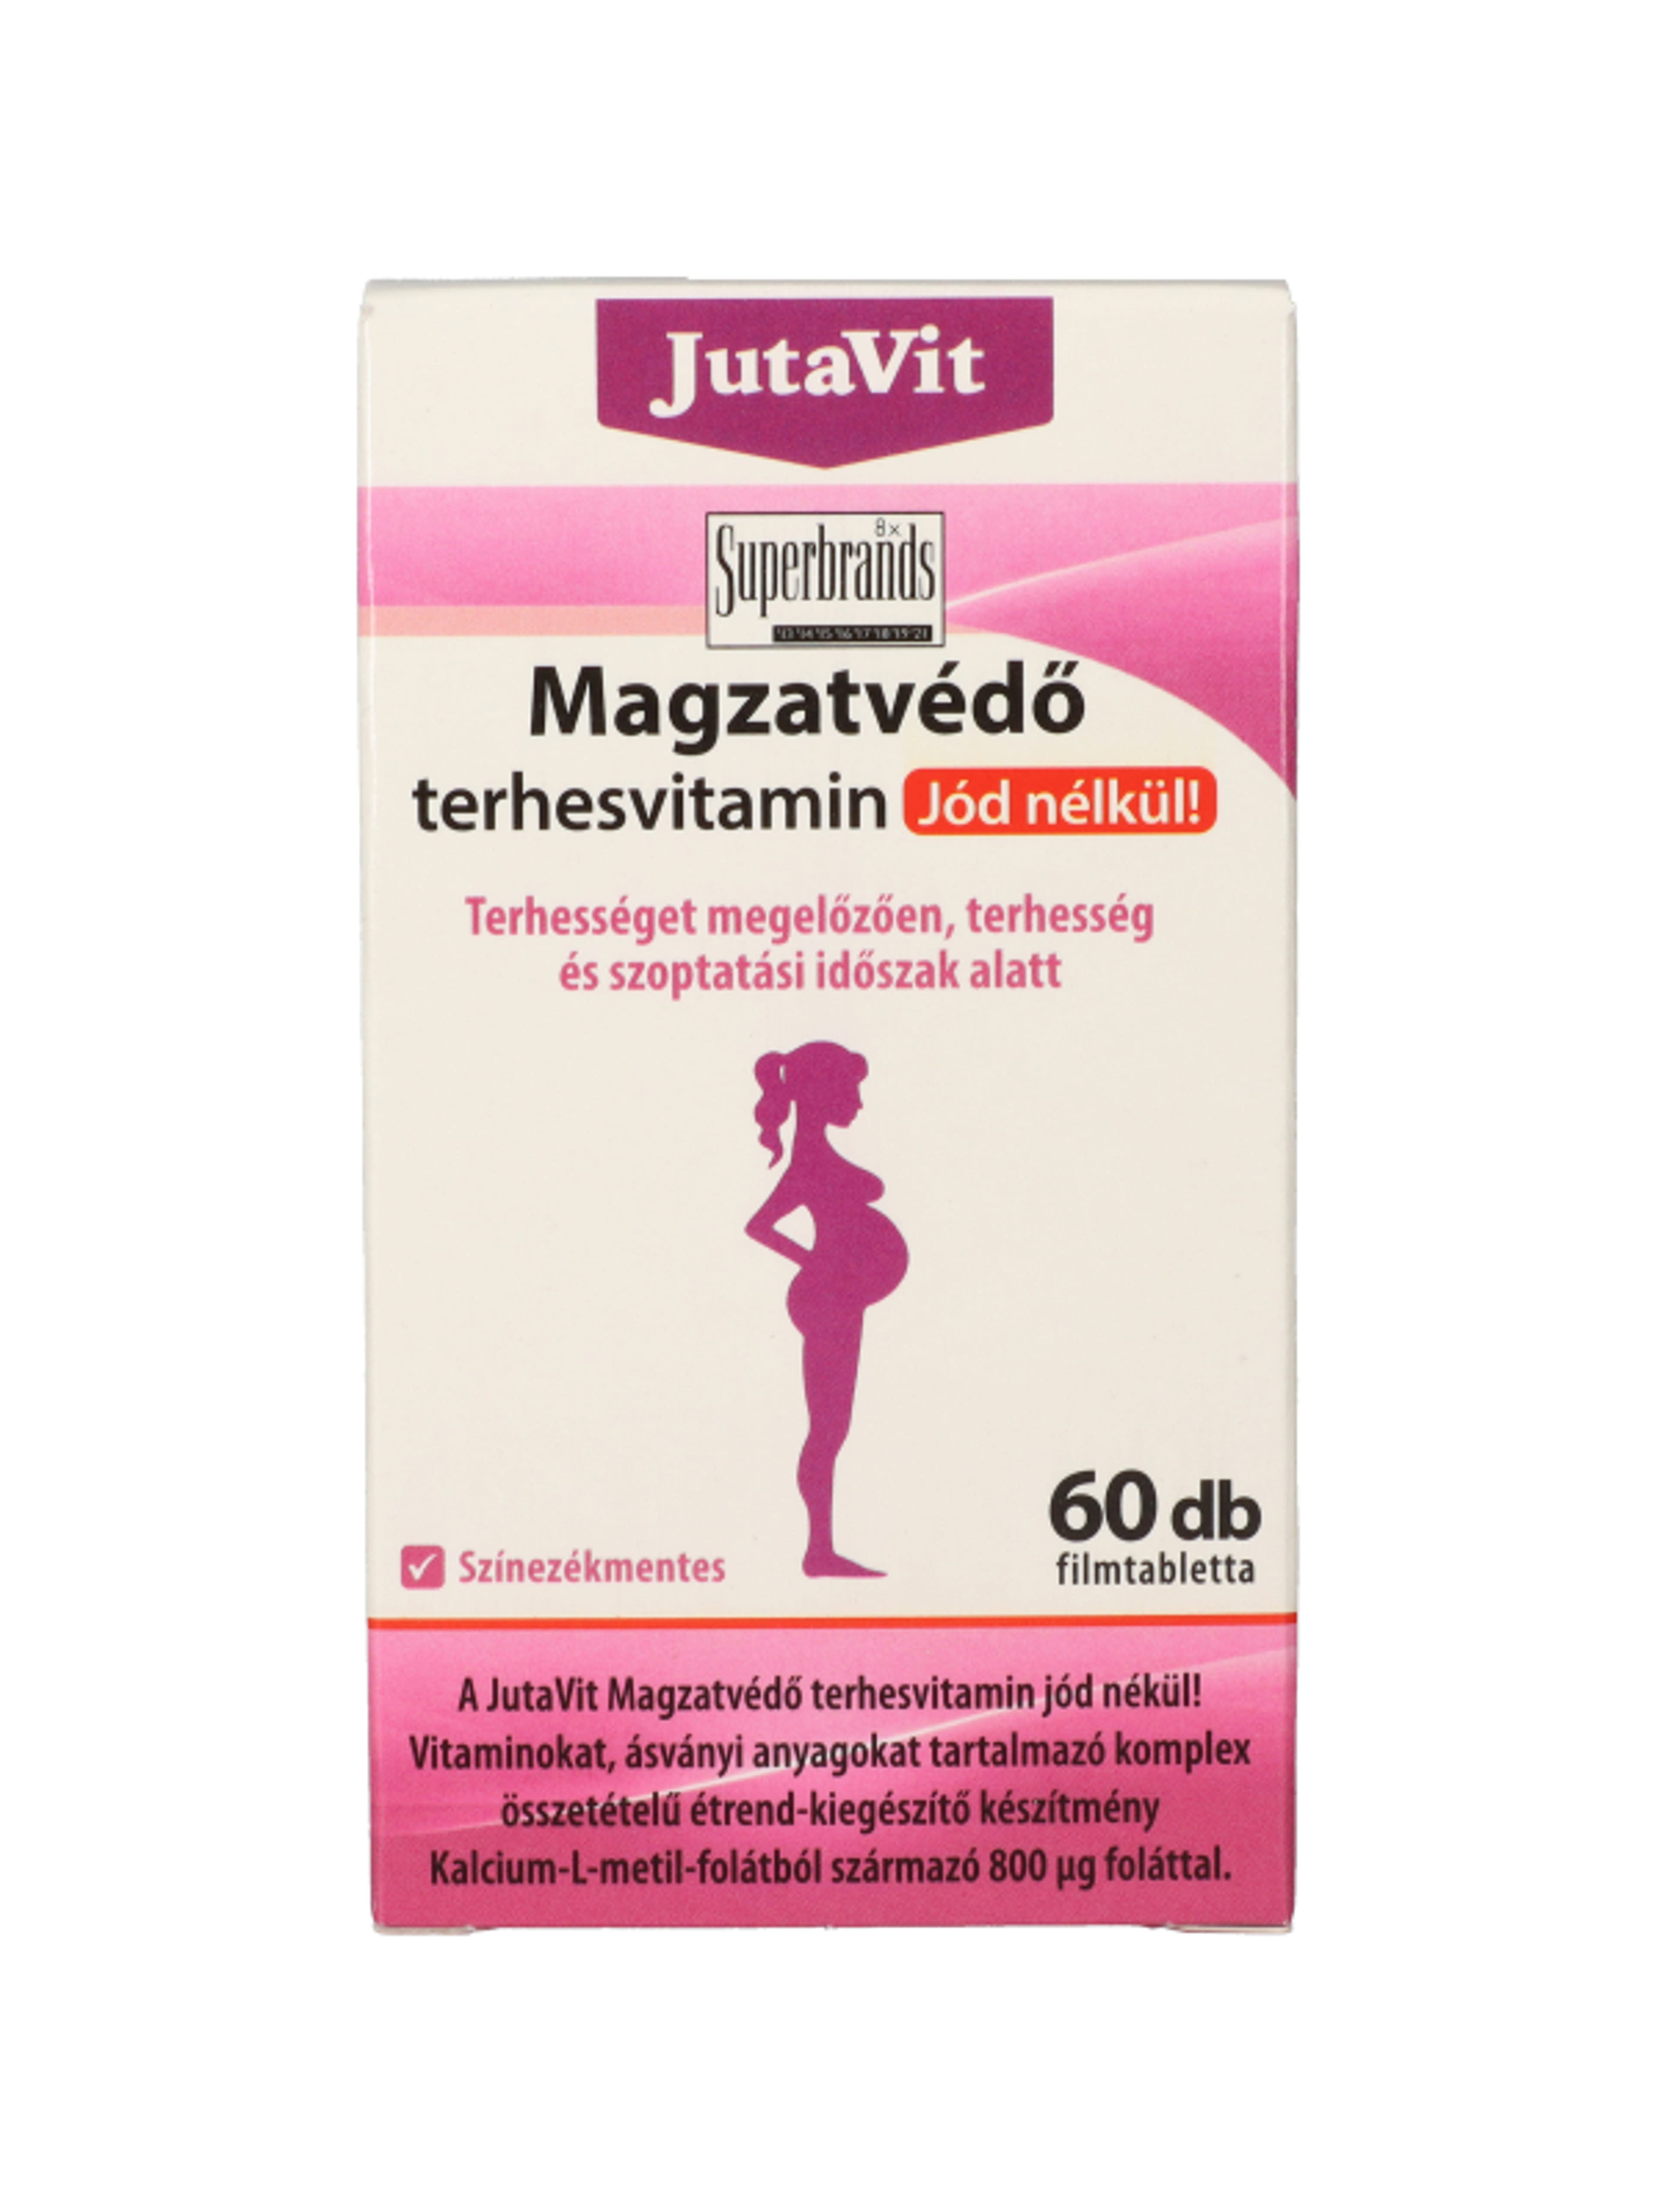 JutaVit magzatvédő terhesviteamin - 60 db